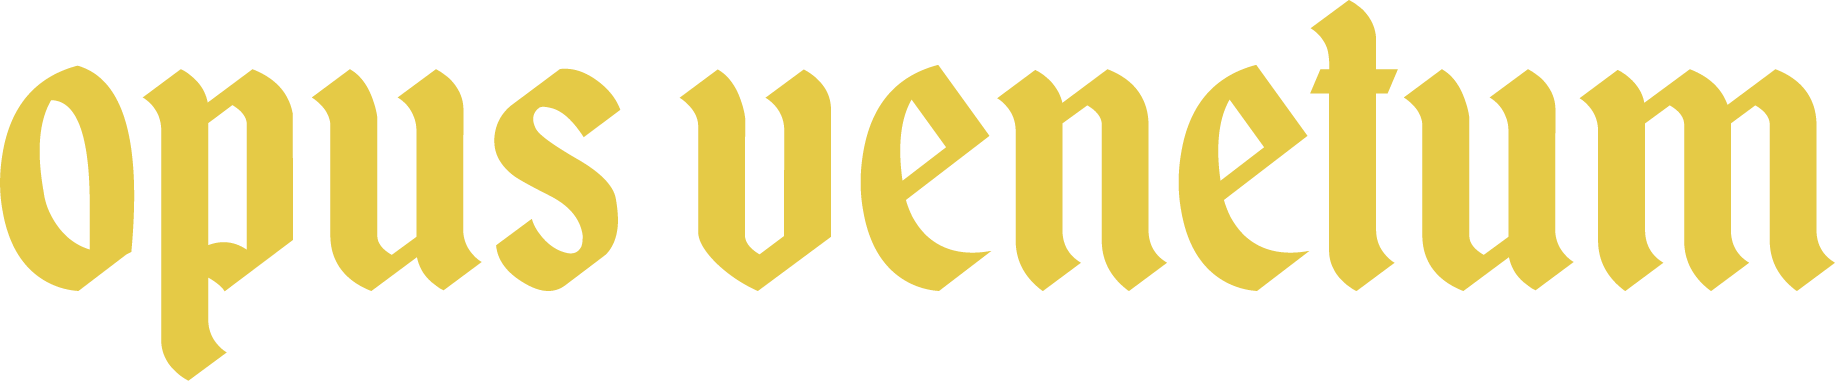 Opus Venetum